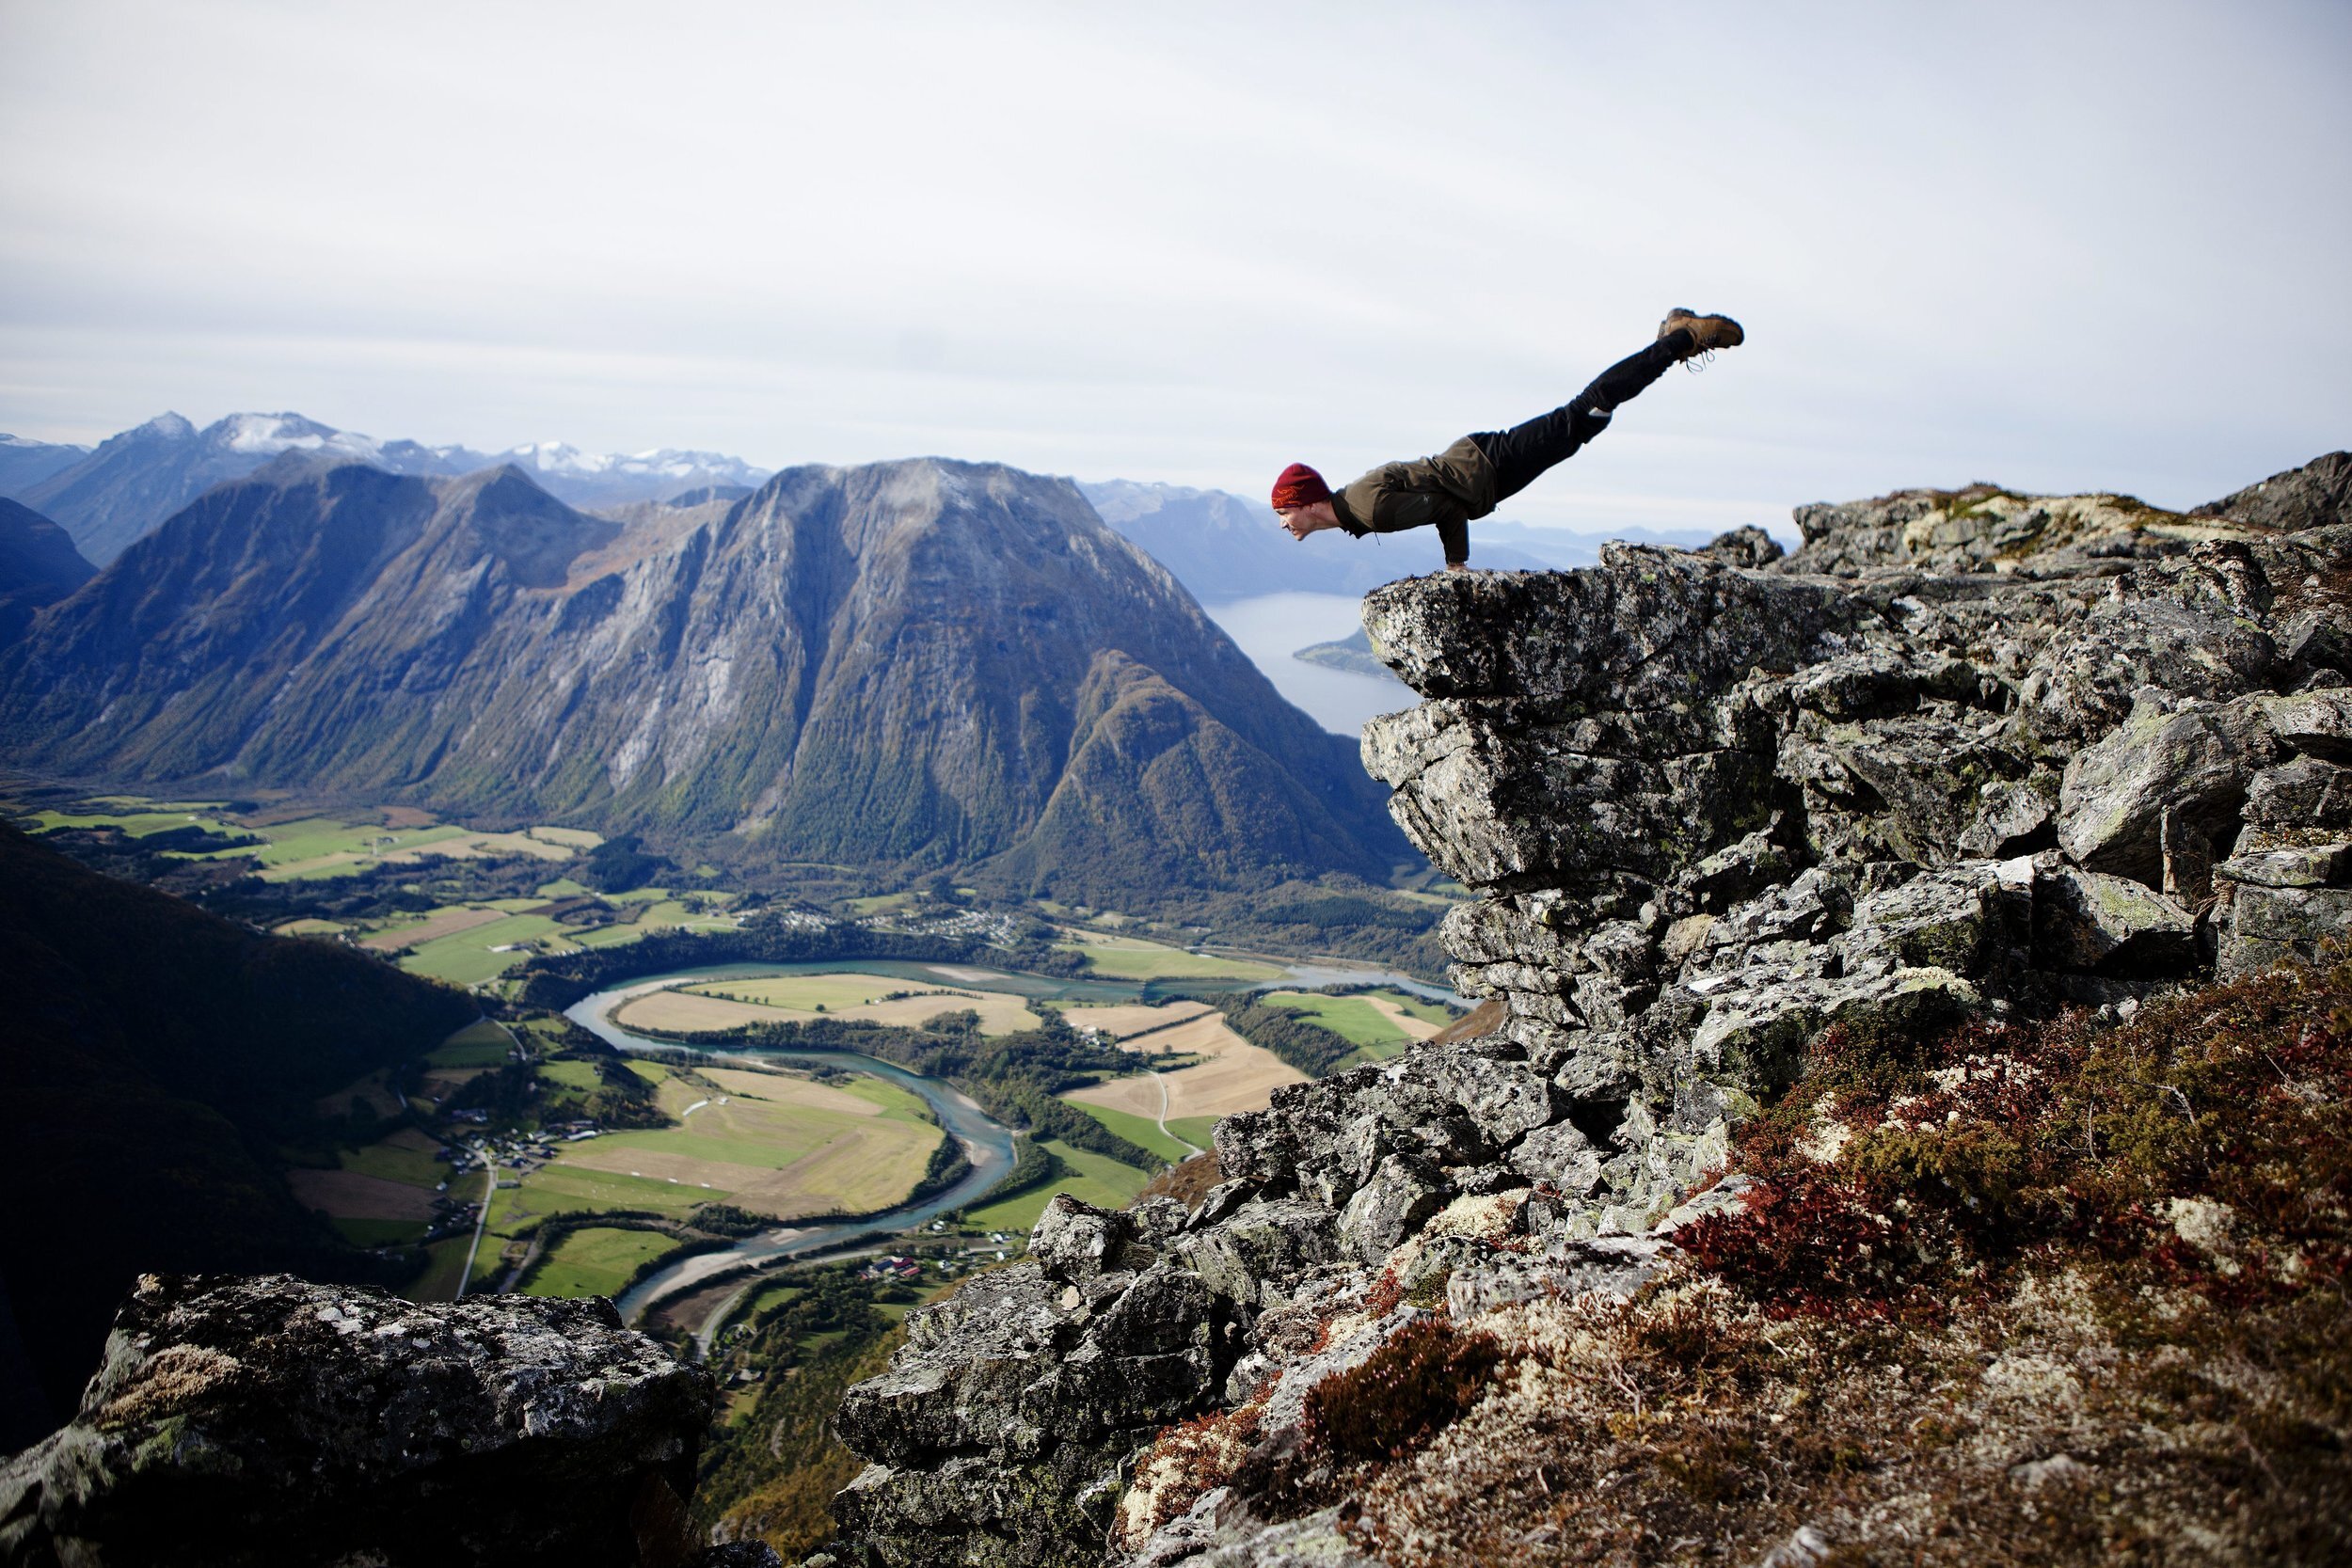  11102013
Yoga Instruktør Alexander Medin tar en yogastilling på Romsdalseggen.
Prosjektet back in the ring, hjelper tidligere rusmisbrukere i bedre mental og fysisk form med yoga.
Foto: Fartein Rudjord 
 